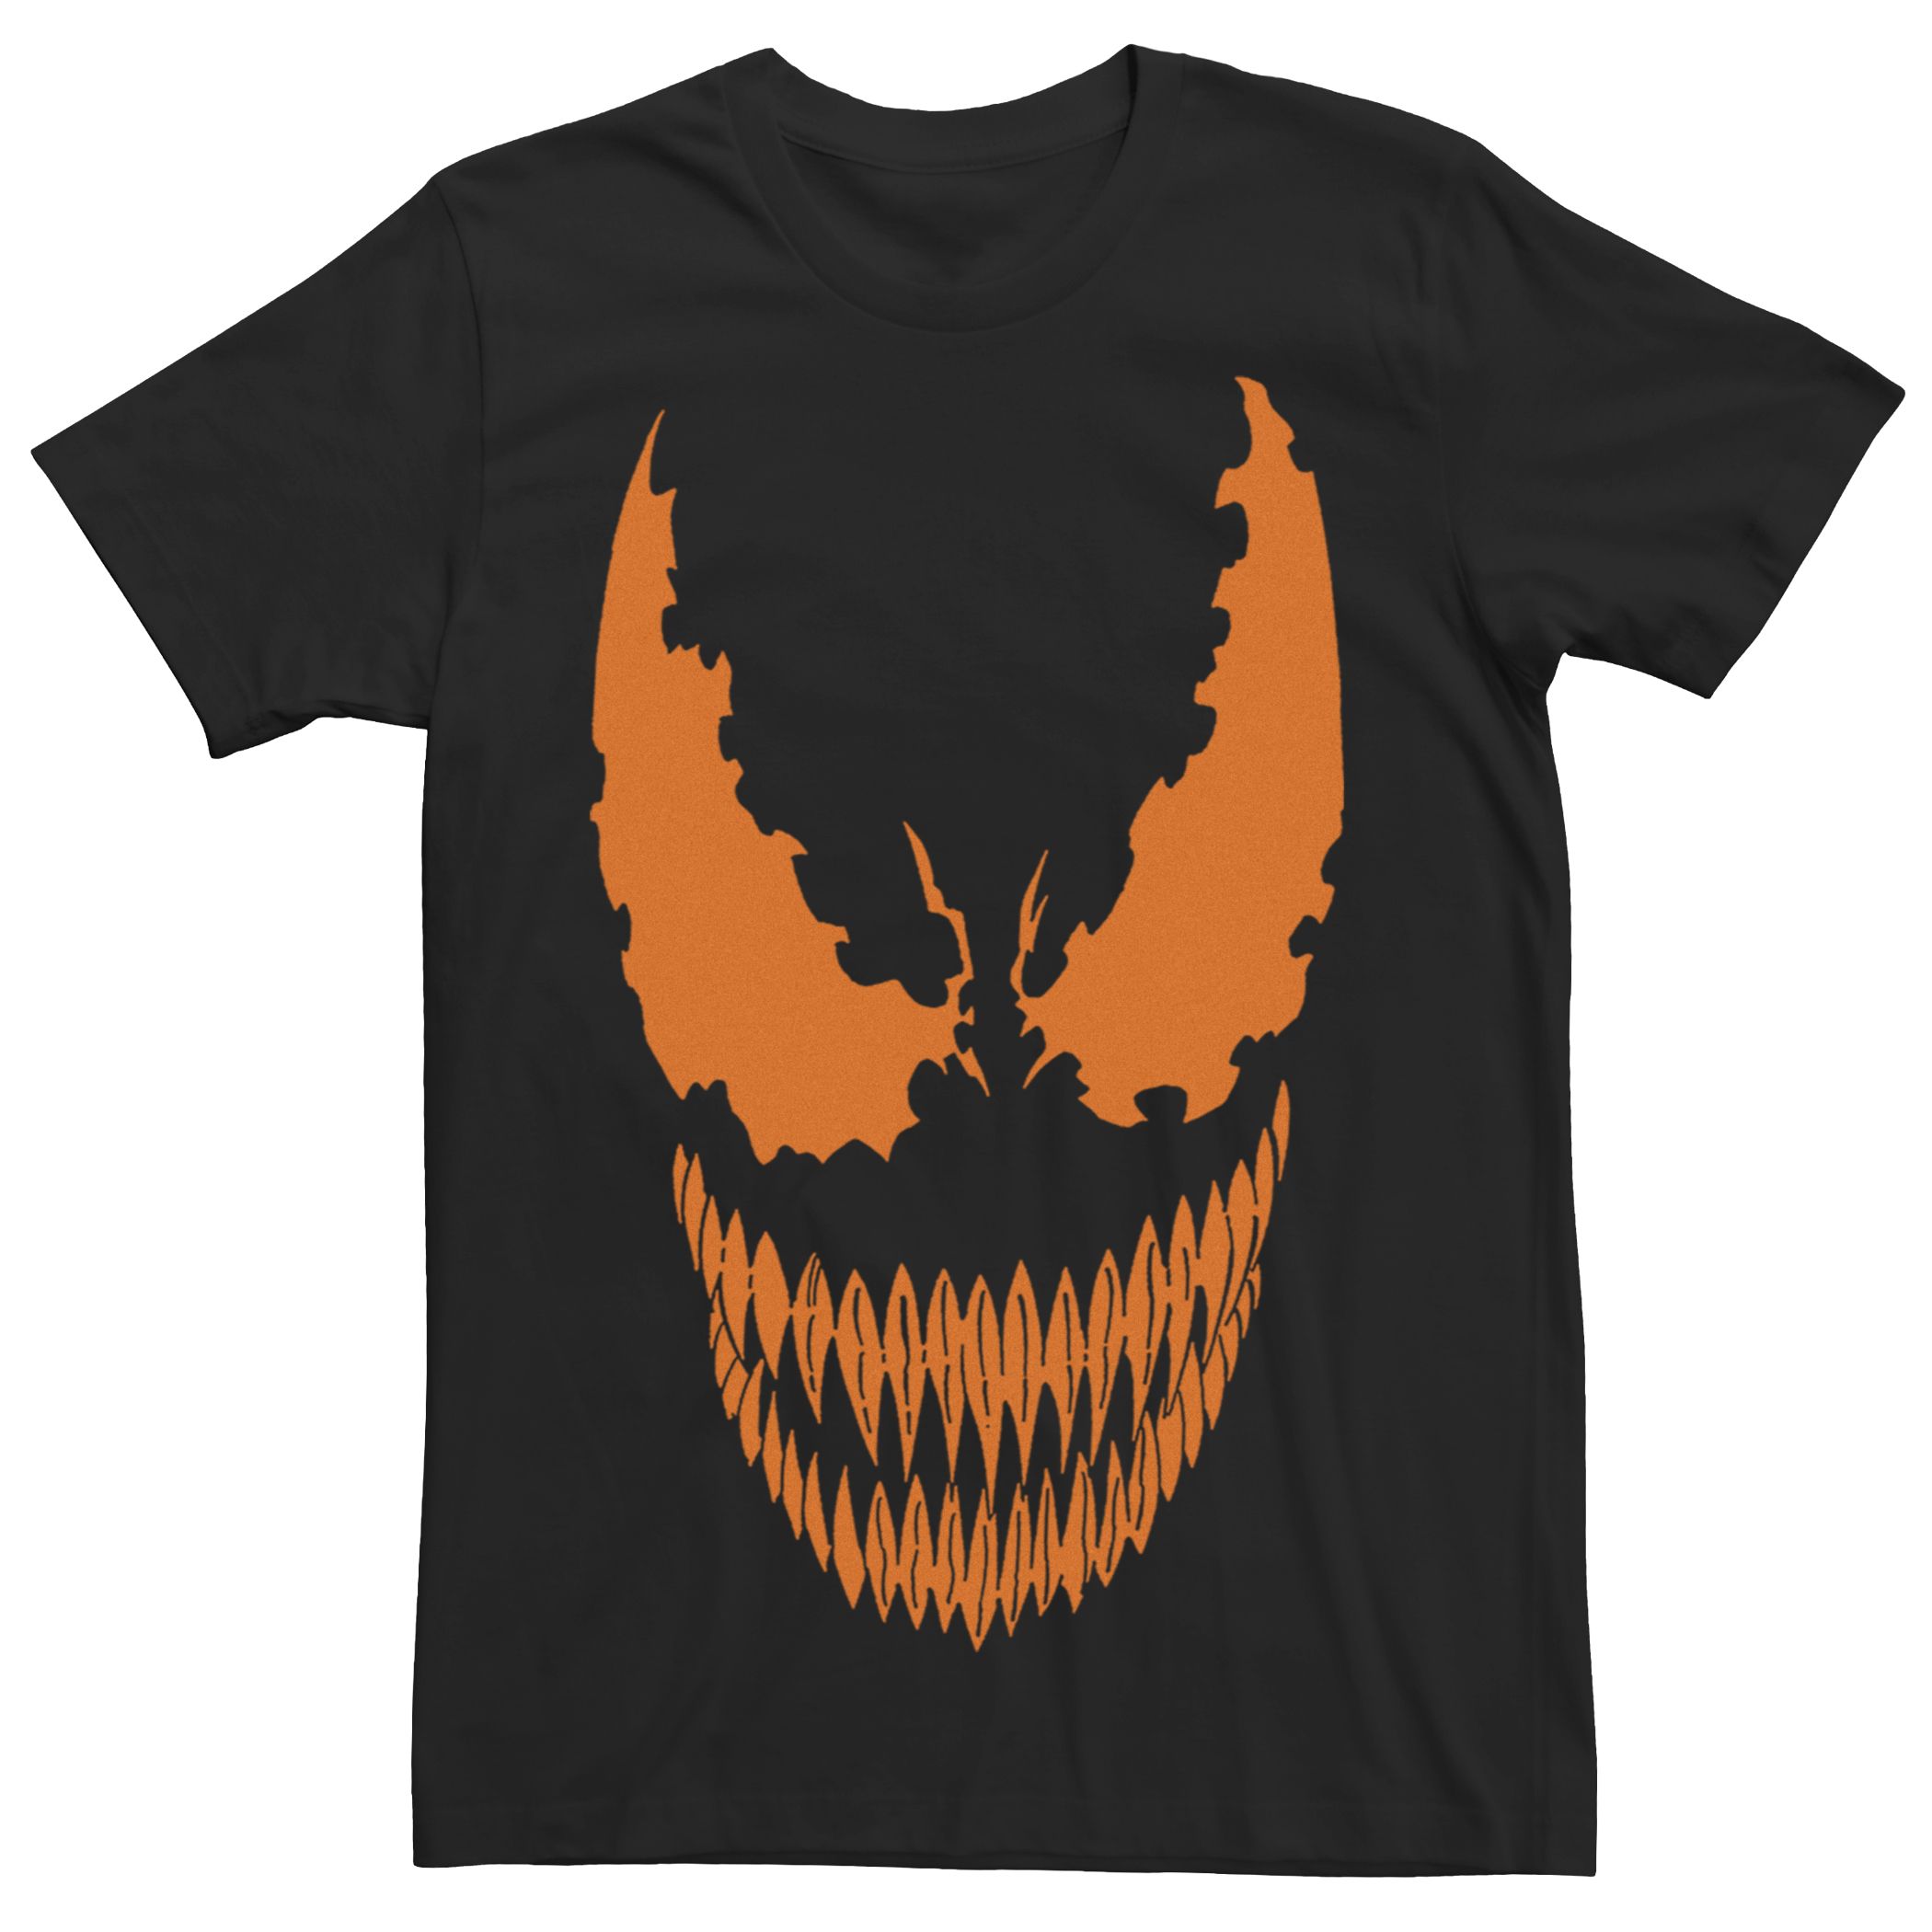 Мужская футболка с рисунком тыквы Marvel Venom Licensed Character